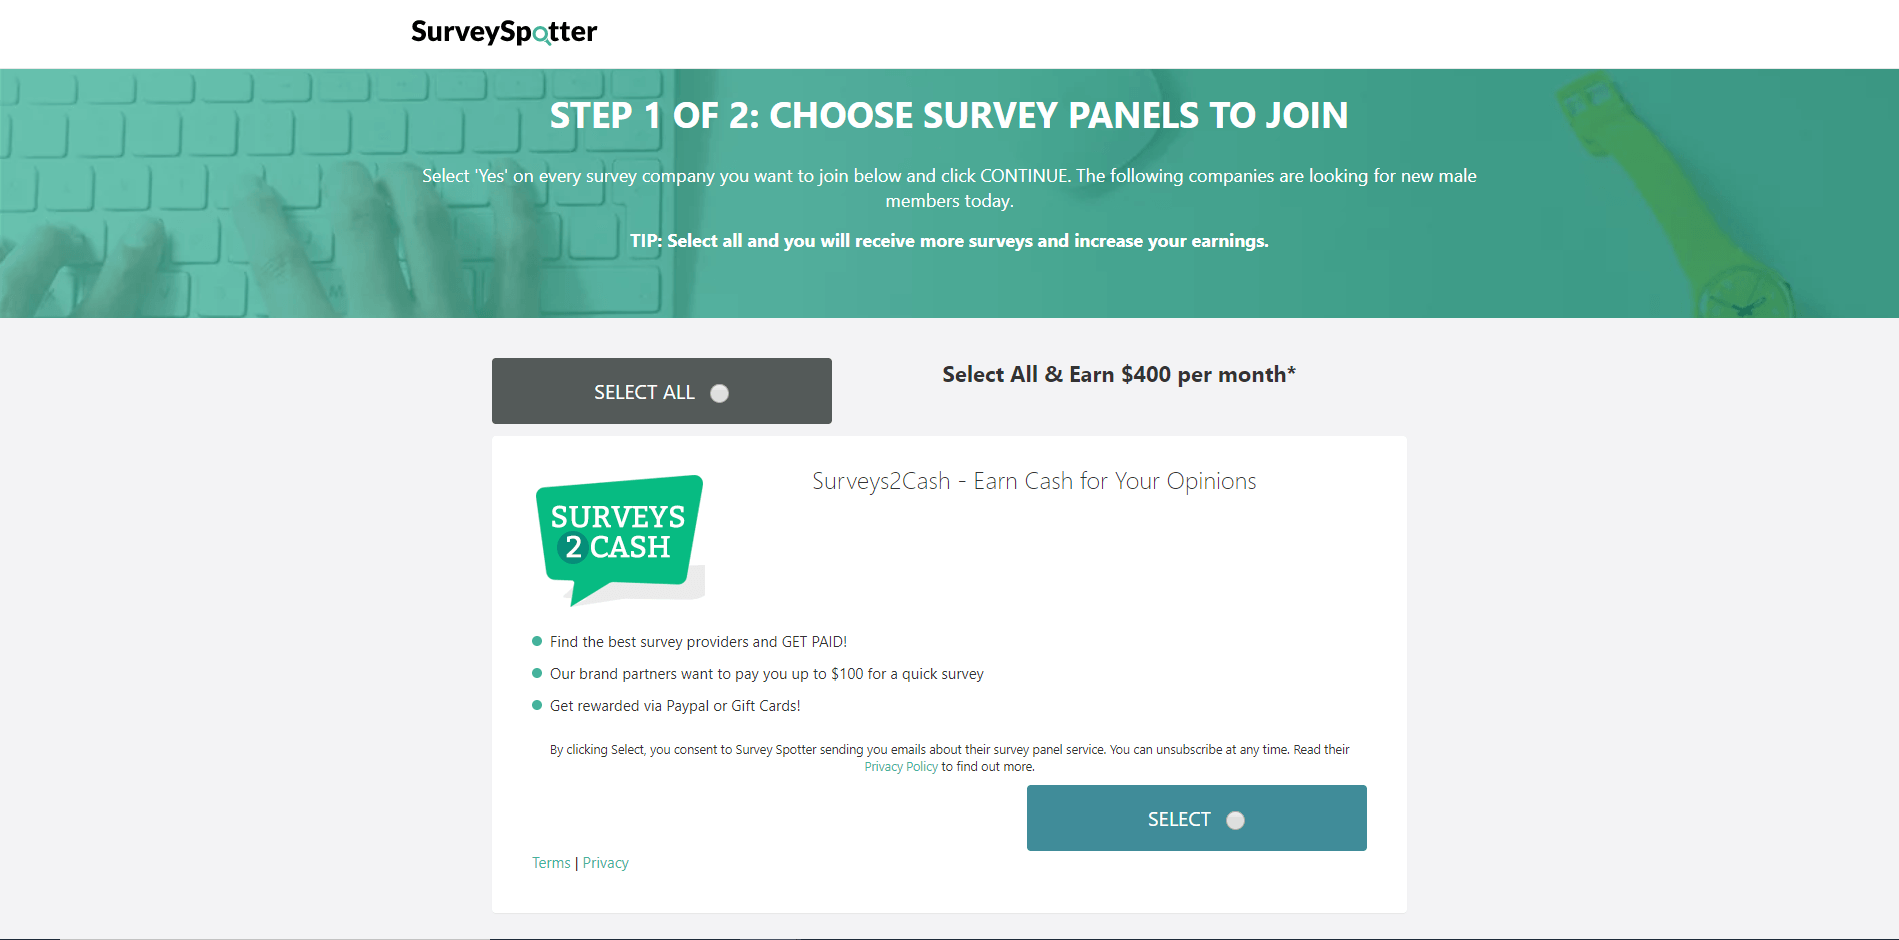 Survey Spotter sign-up step 1Survey Spotter choose survey paneks